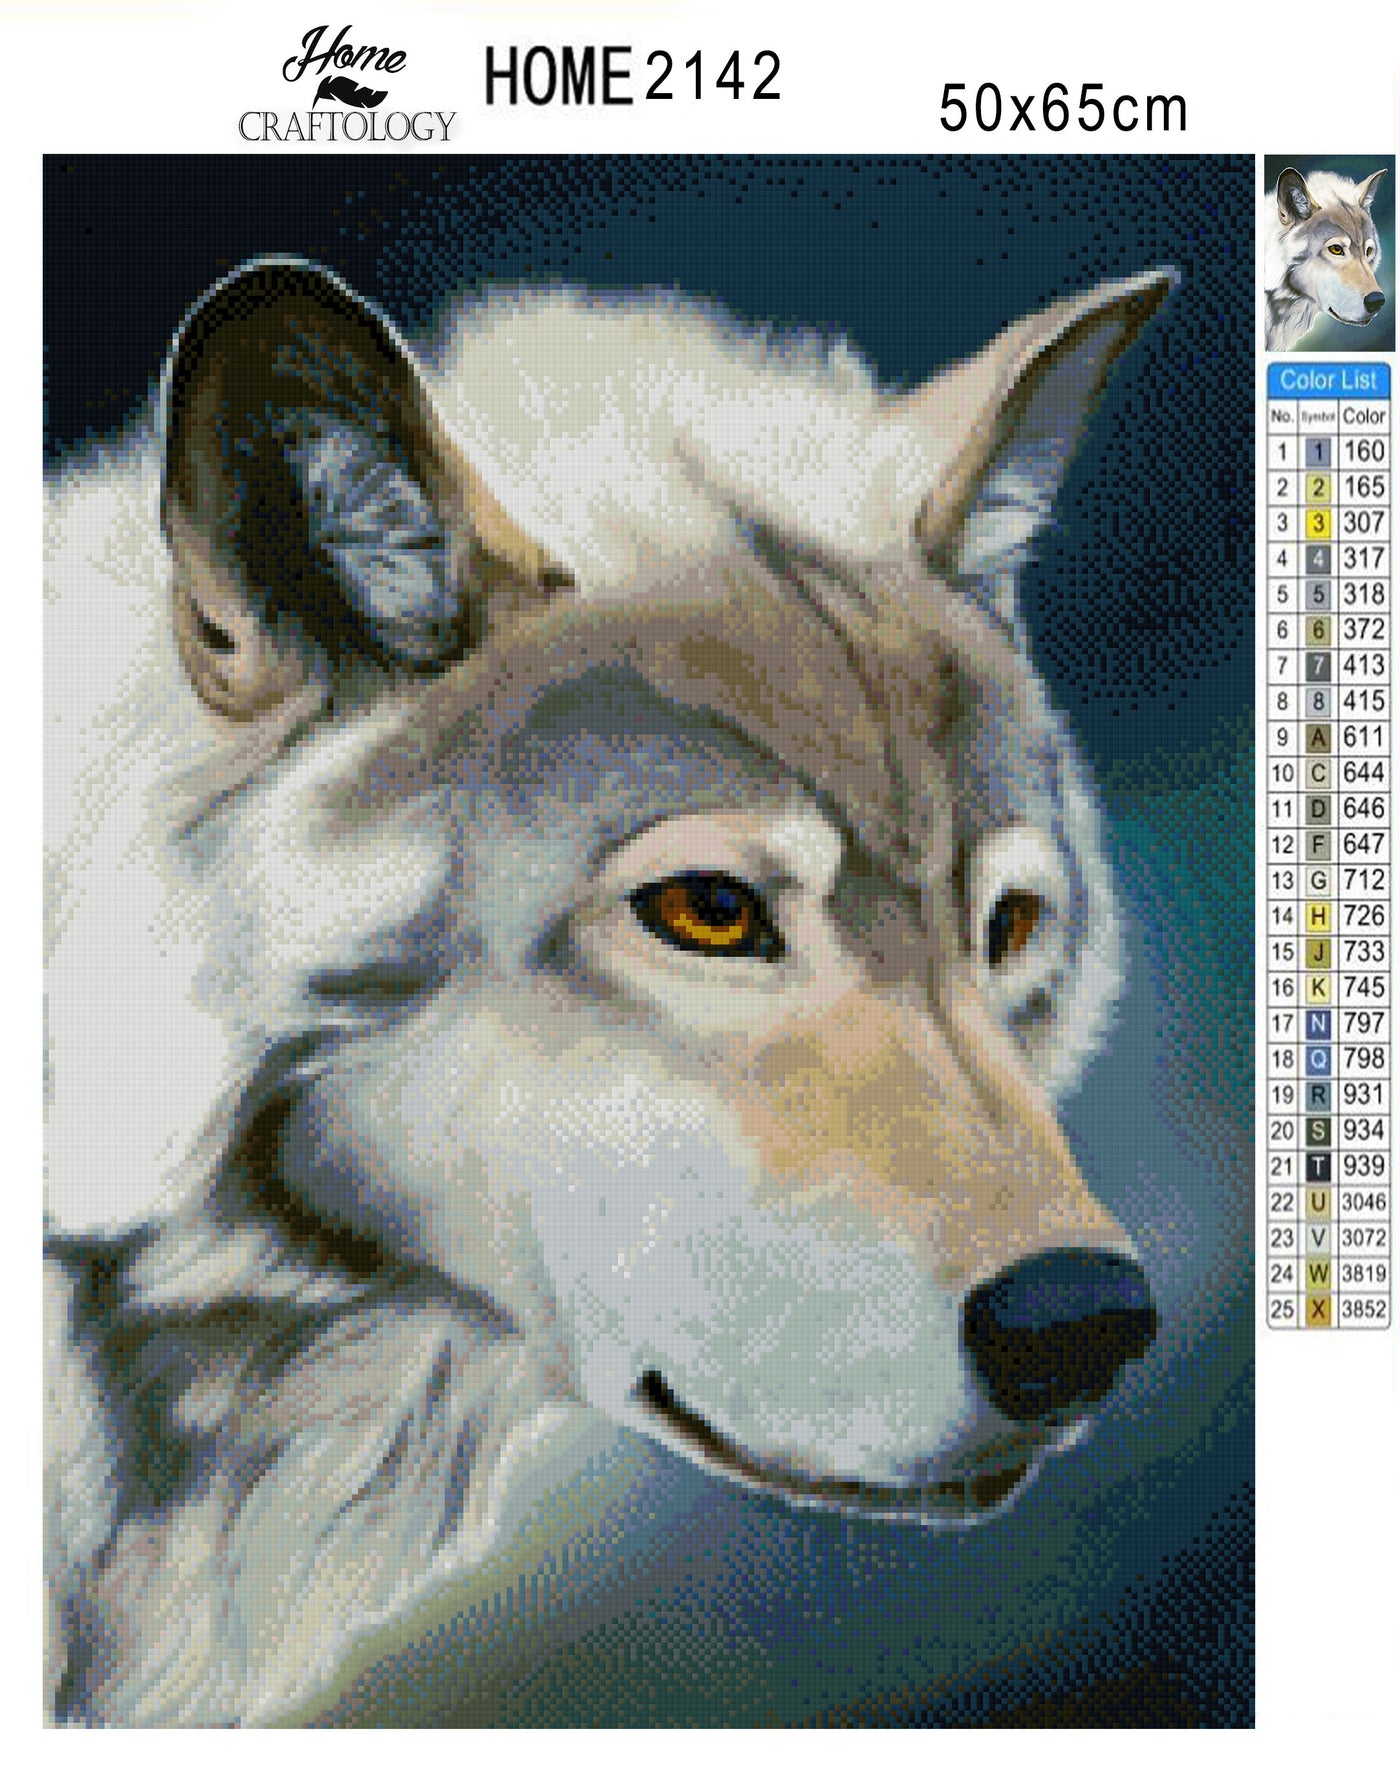 Curious Wolf - Premium Diamond Painting Kit